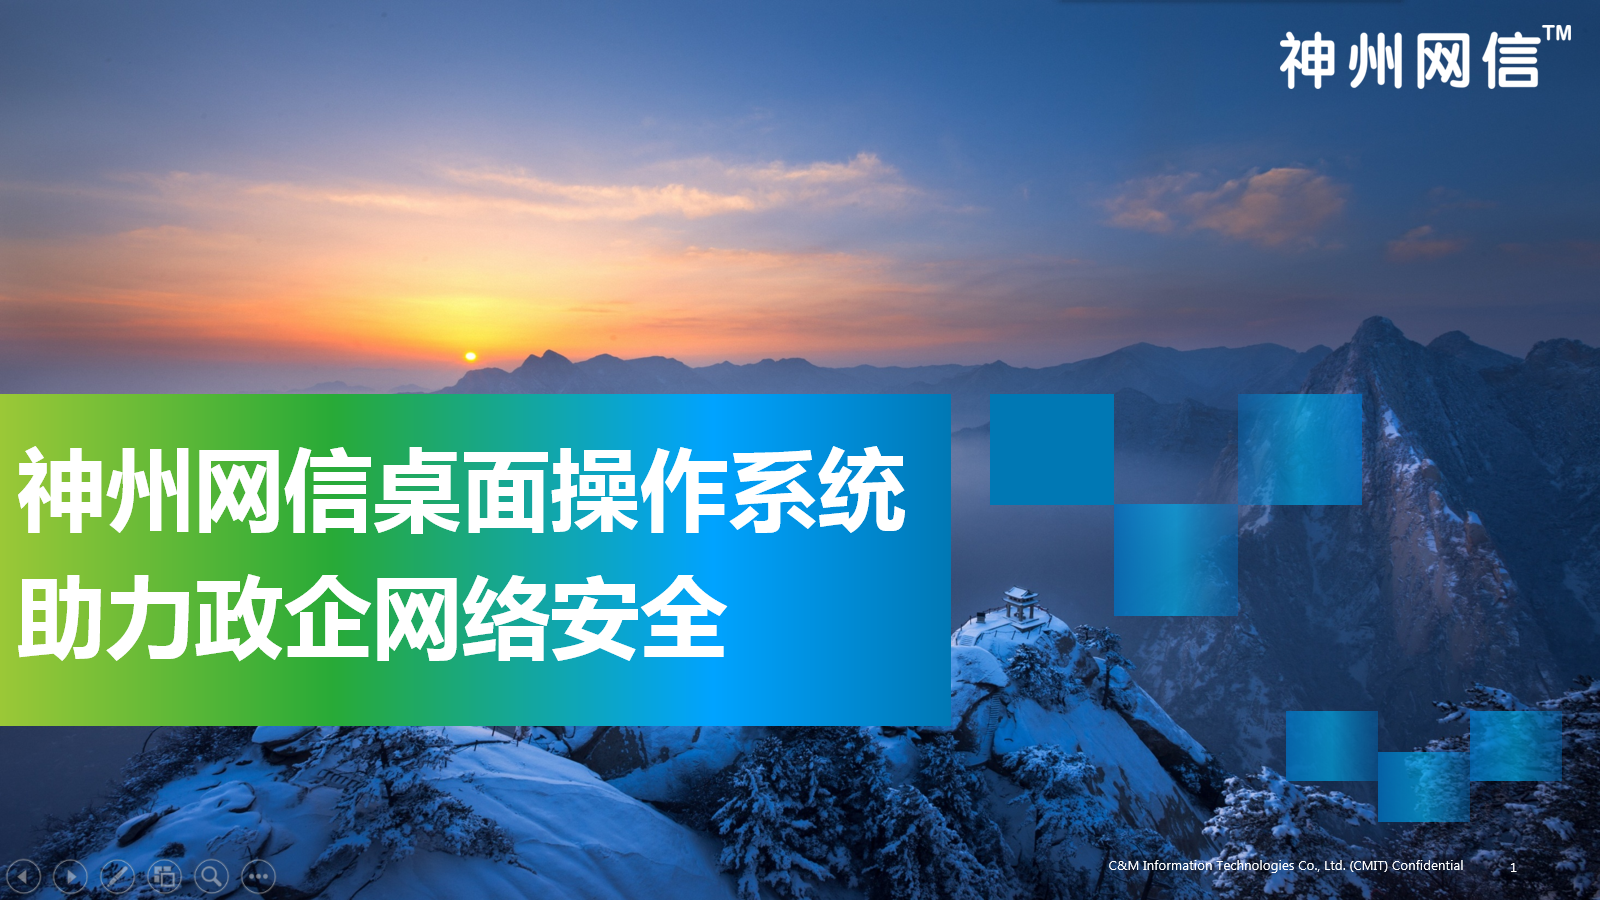 Windows 10 神州网信政府版 CMGE_V2022-L.1345 